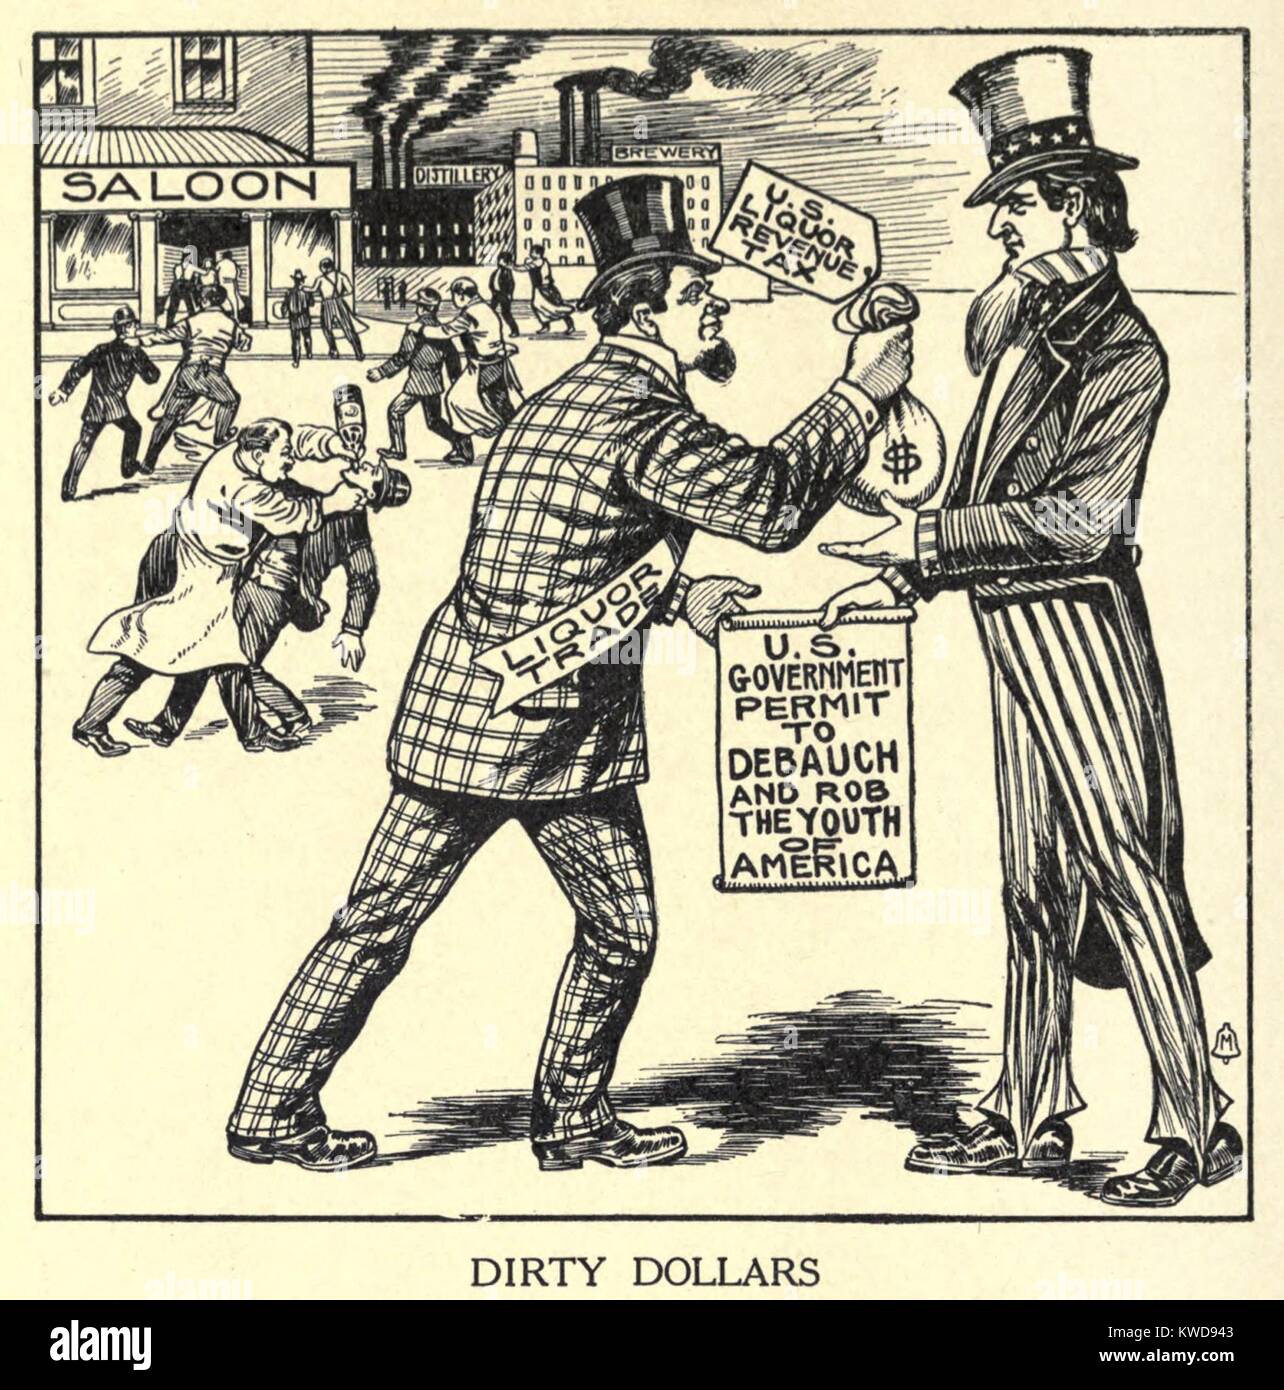 Dreckige Dollar. Cartoon zeigt die Spirituosen Handel liefern einen Sack Geld zu Uncle Sam. In Exchange, den Handel erhalten eine Erlaubnis zu verderben und Rob die Jugend von Amerika. Von "Der Schatten der Flasche", 1915 Buch für bundesweite Verbot der (BSLOC 2016 8 61) Stockfoto